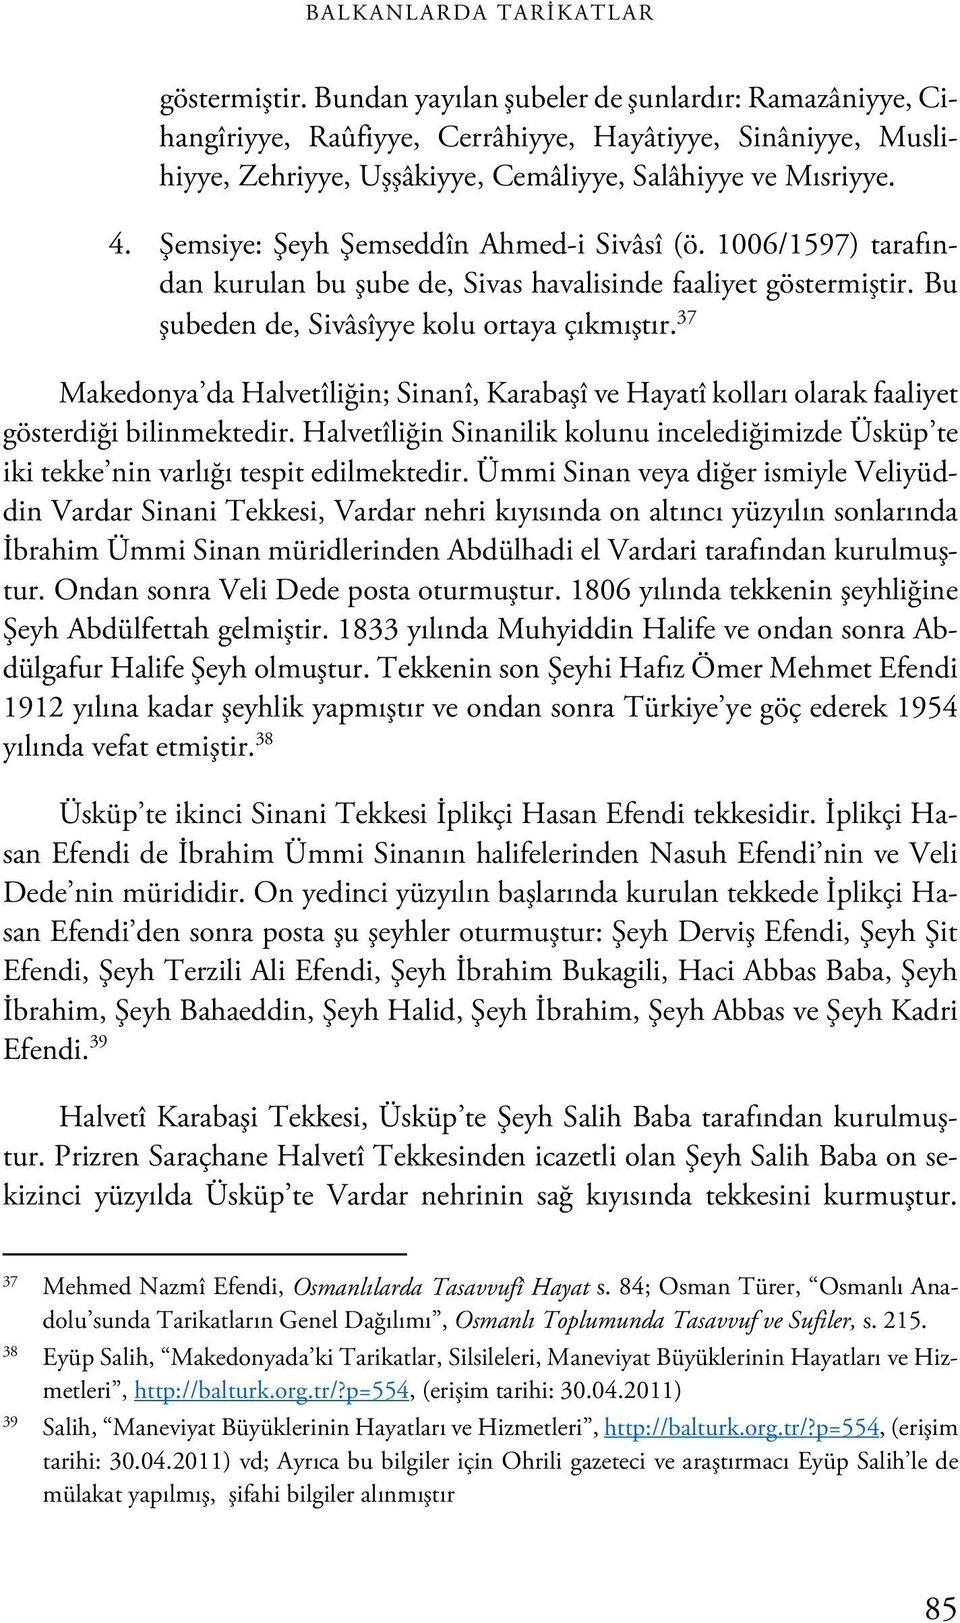 Şemsiye: Şeyh Şemseddîn Ahmed-i Sivâsî (ö. 1006/1597) tarafından kurulan bu şube de, Sivas havalisinde faaliyet göstermiştir. Bu şubeden de, Sivâsîyye kolu ortaya çıkmıştır.